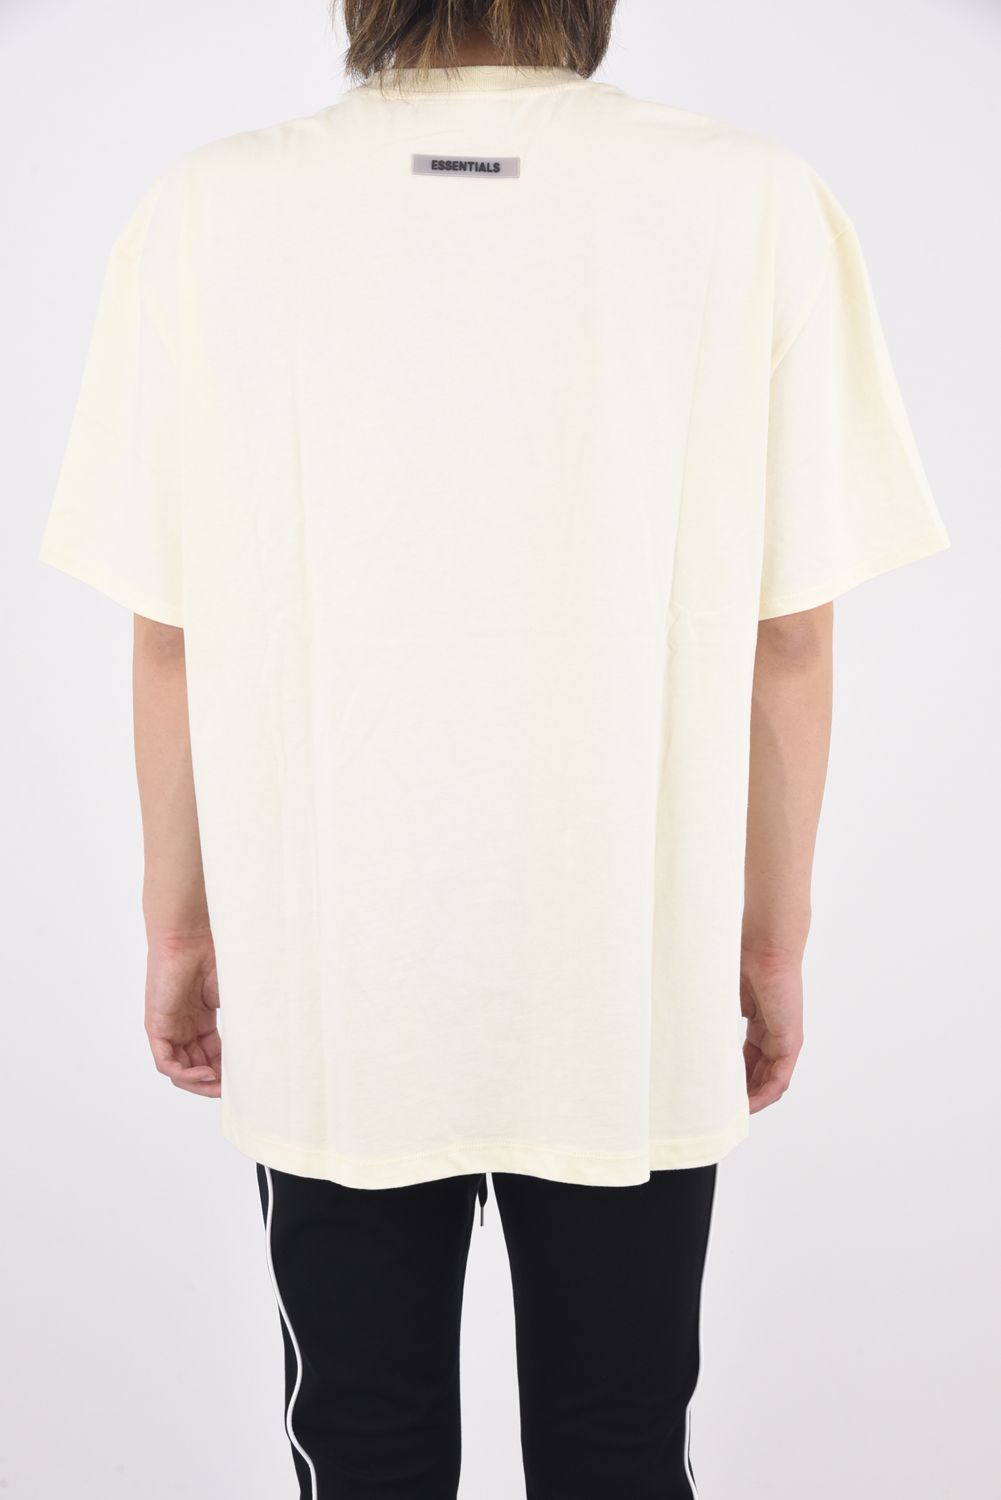 FOG エッセンシャルズ フロント 3Dロゴ 半袖 Tシャツ ローアンバー XL